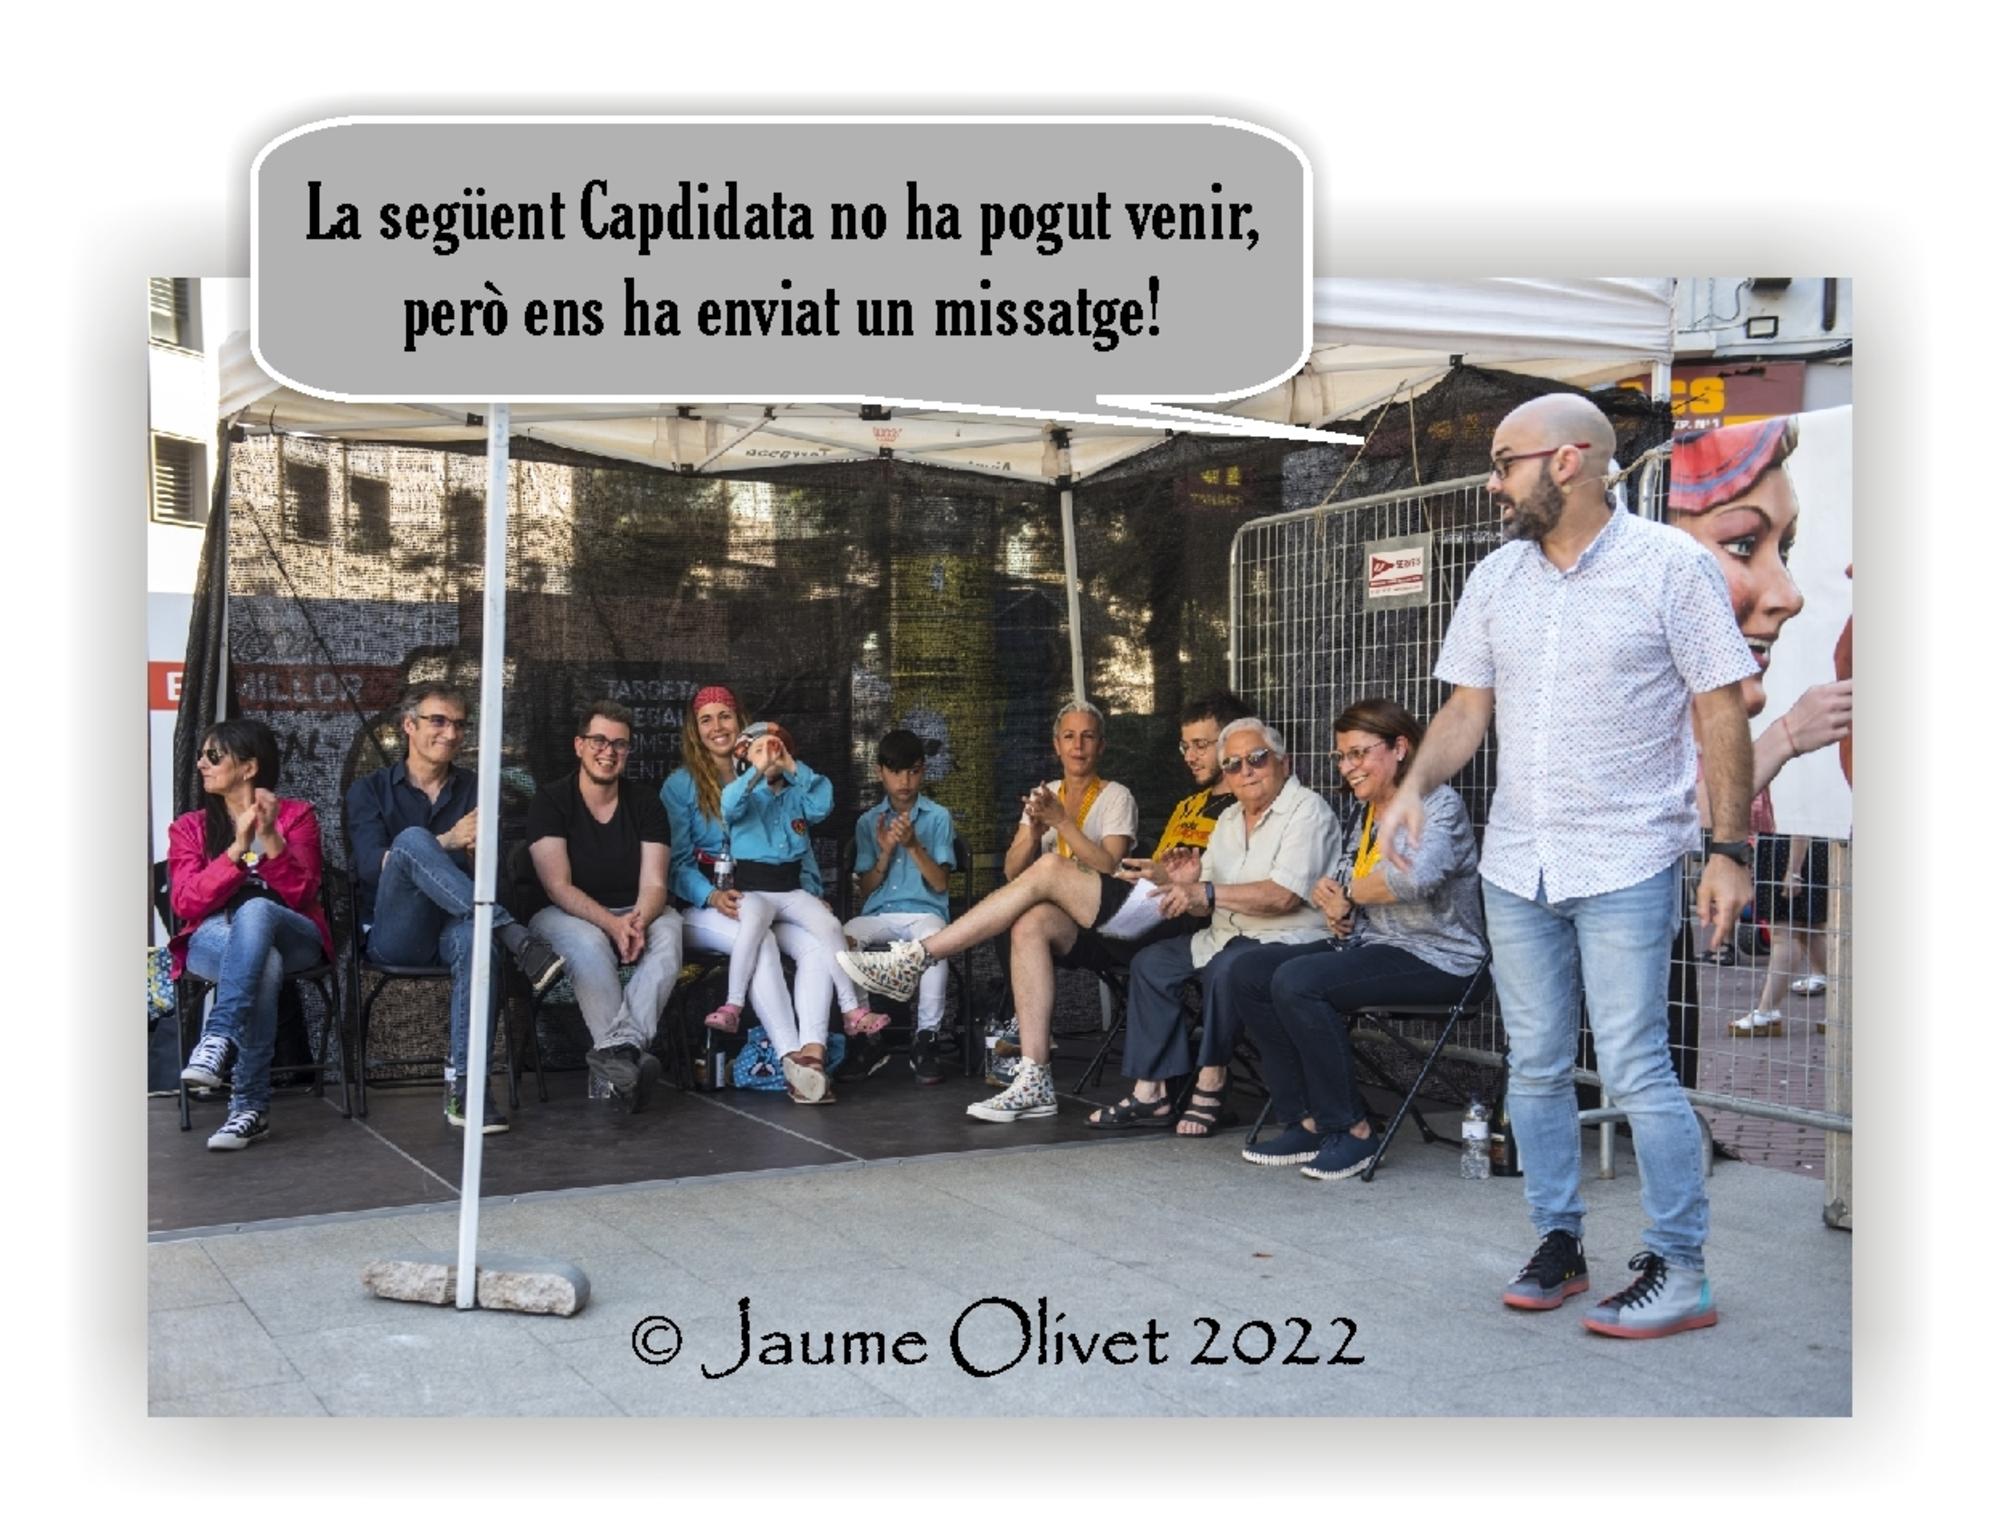  Jaume Olivet 2022